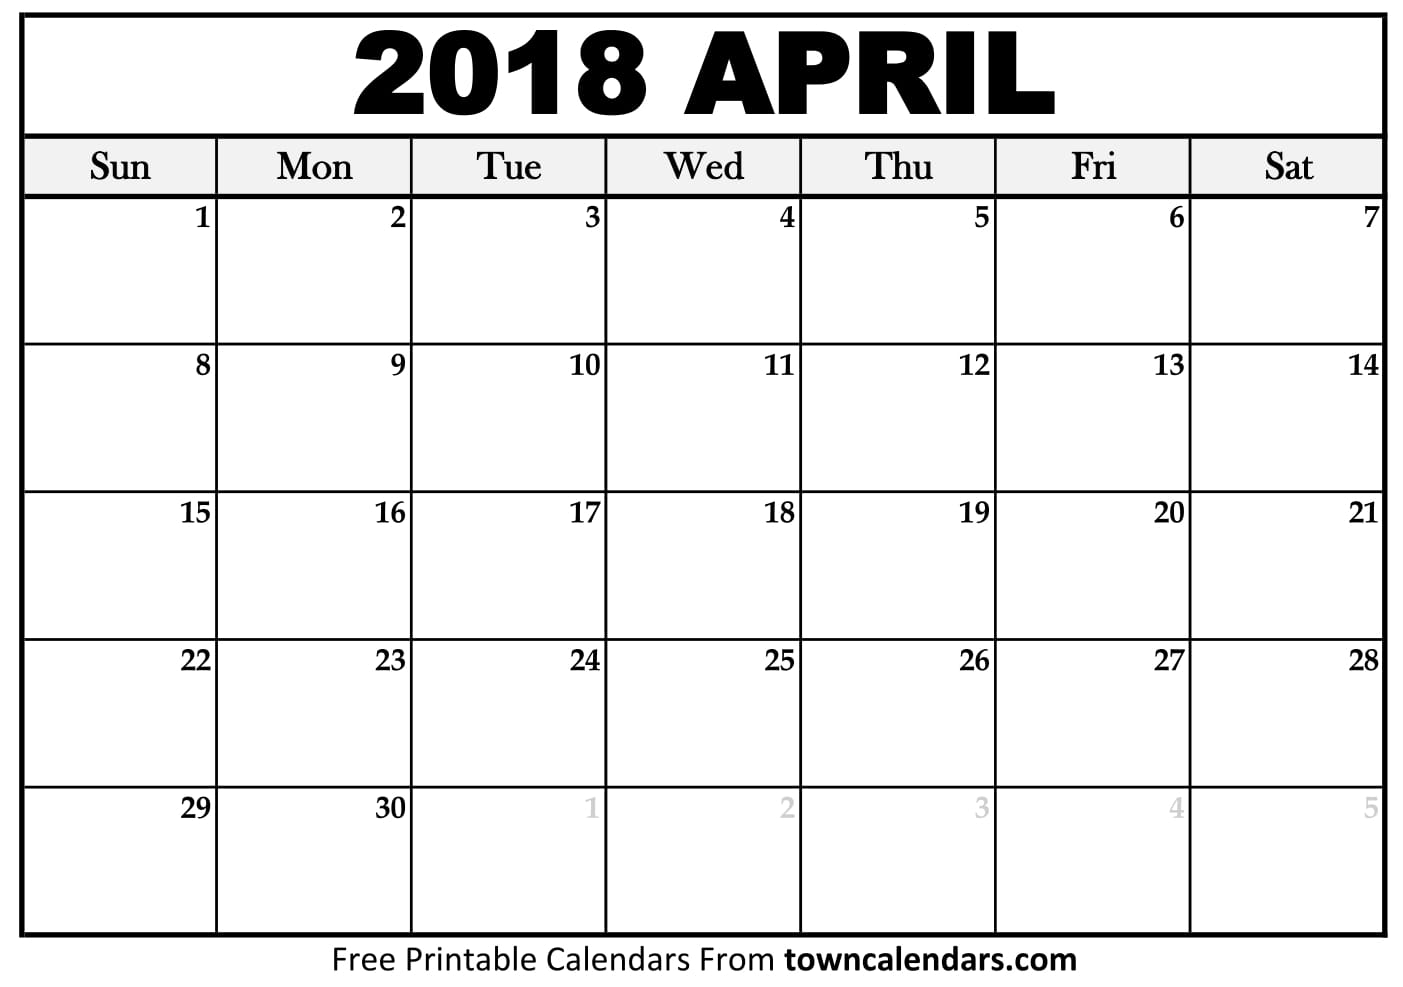 Download April 2018 calendar